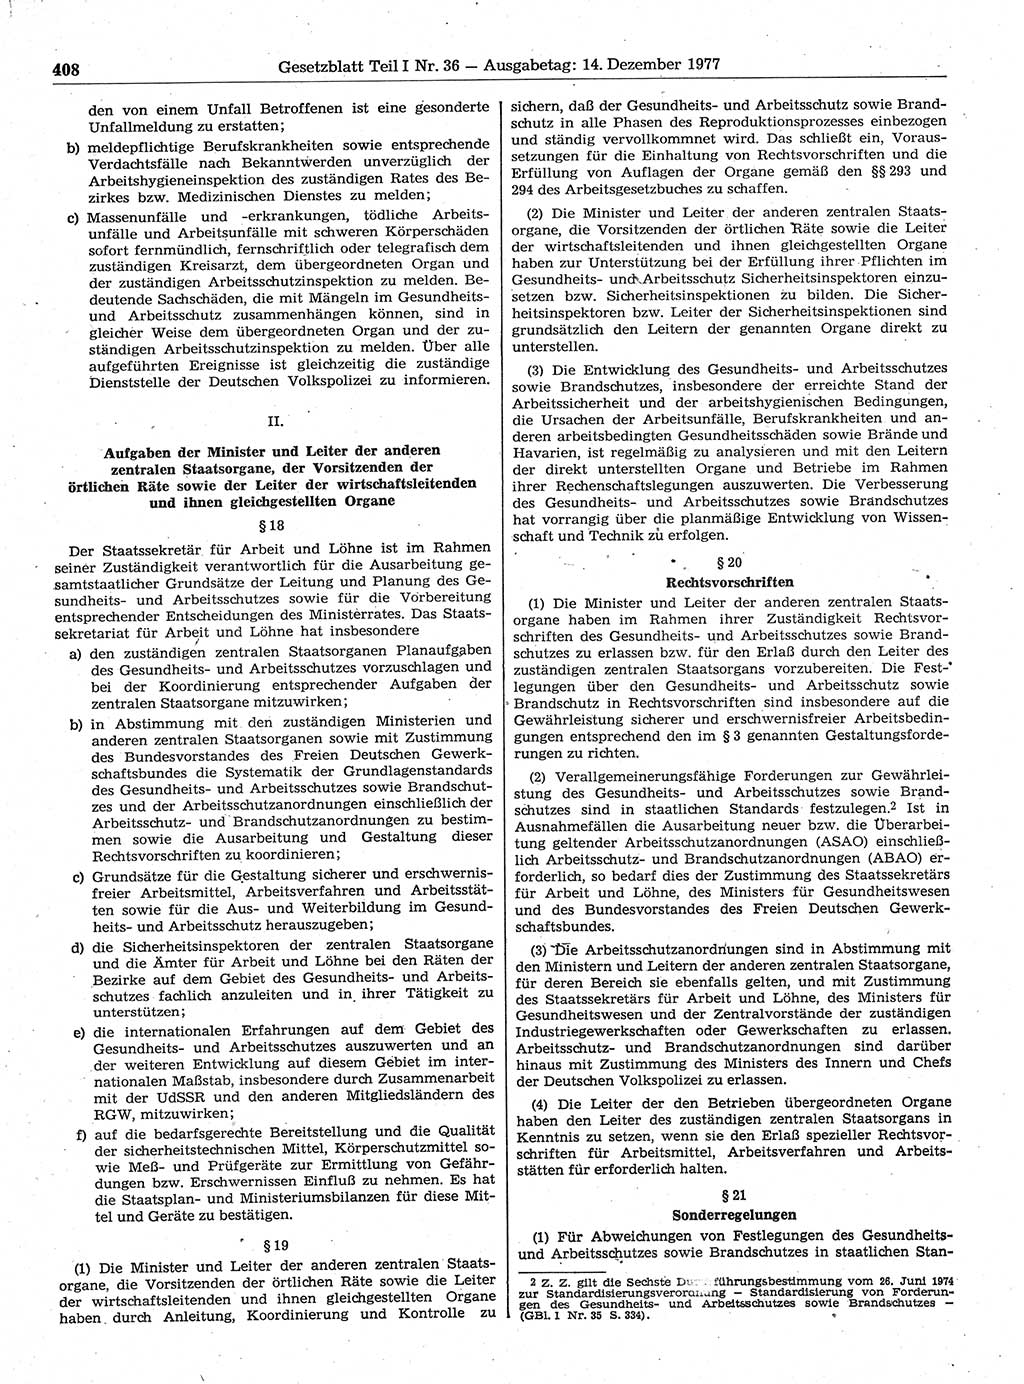 Gesetzblatt (GBl.) der Deutschen Demokratischen Republik (DDR) Teil Ⅰ 1977, Seite 408 (GBl. DDR Ⅰ 1977, S. 408)